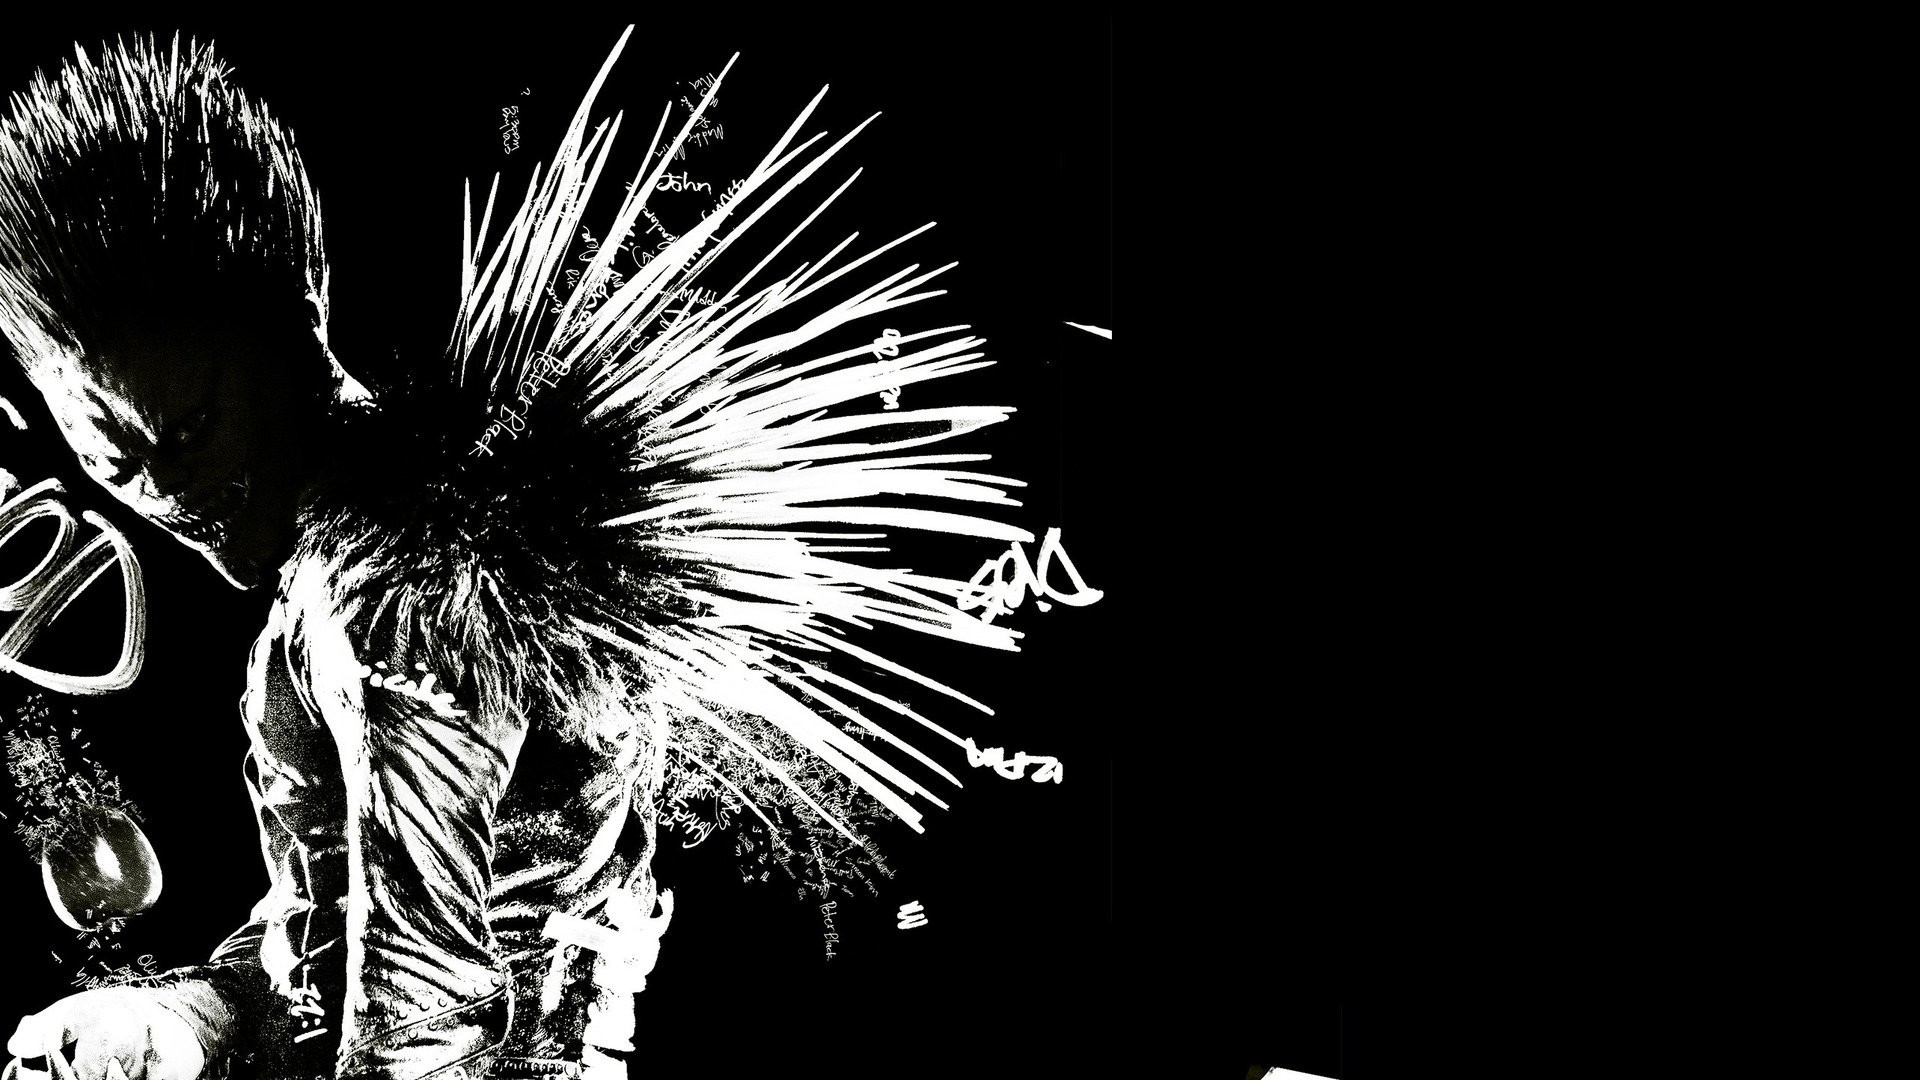 Death Note - Netflix lança 1º trailer da sua versão em live action